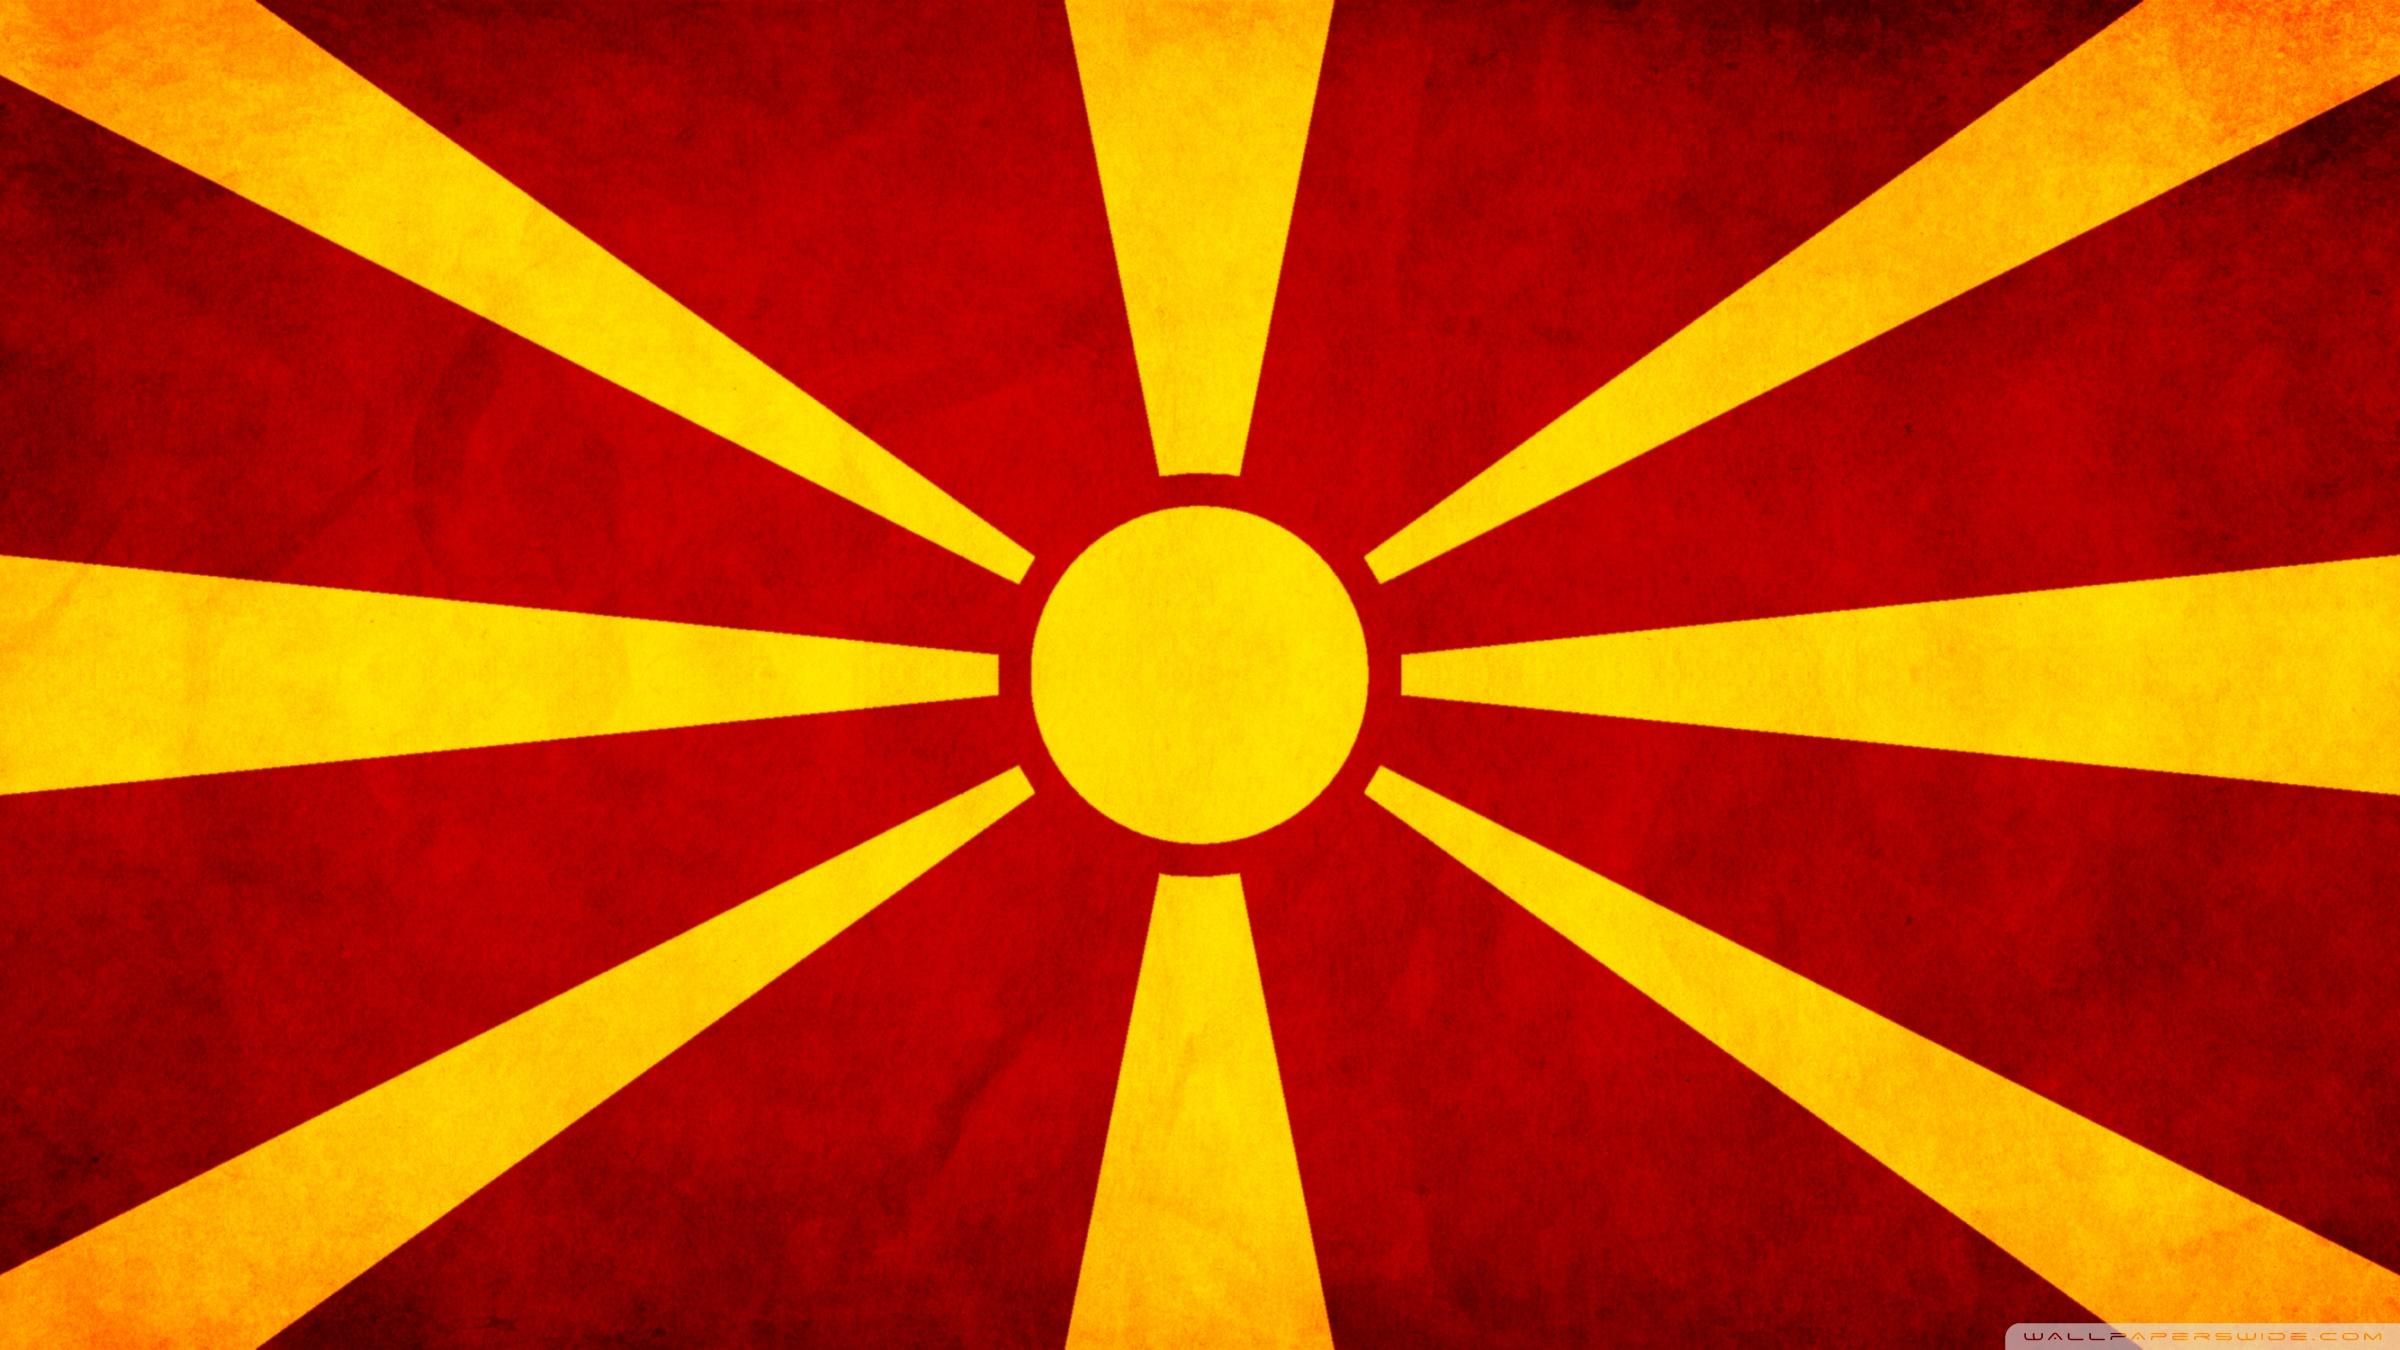 Macedonian Flag ❤ K 2K Desk 4K Wallpapers for K Ultra 2K TV • Dual